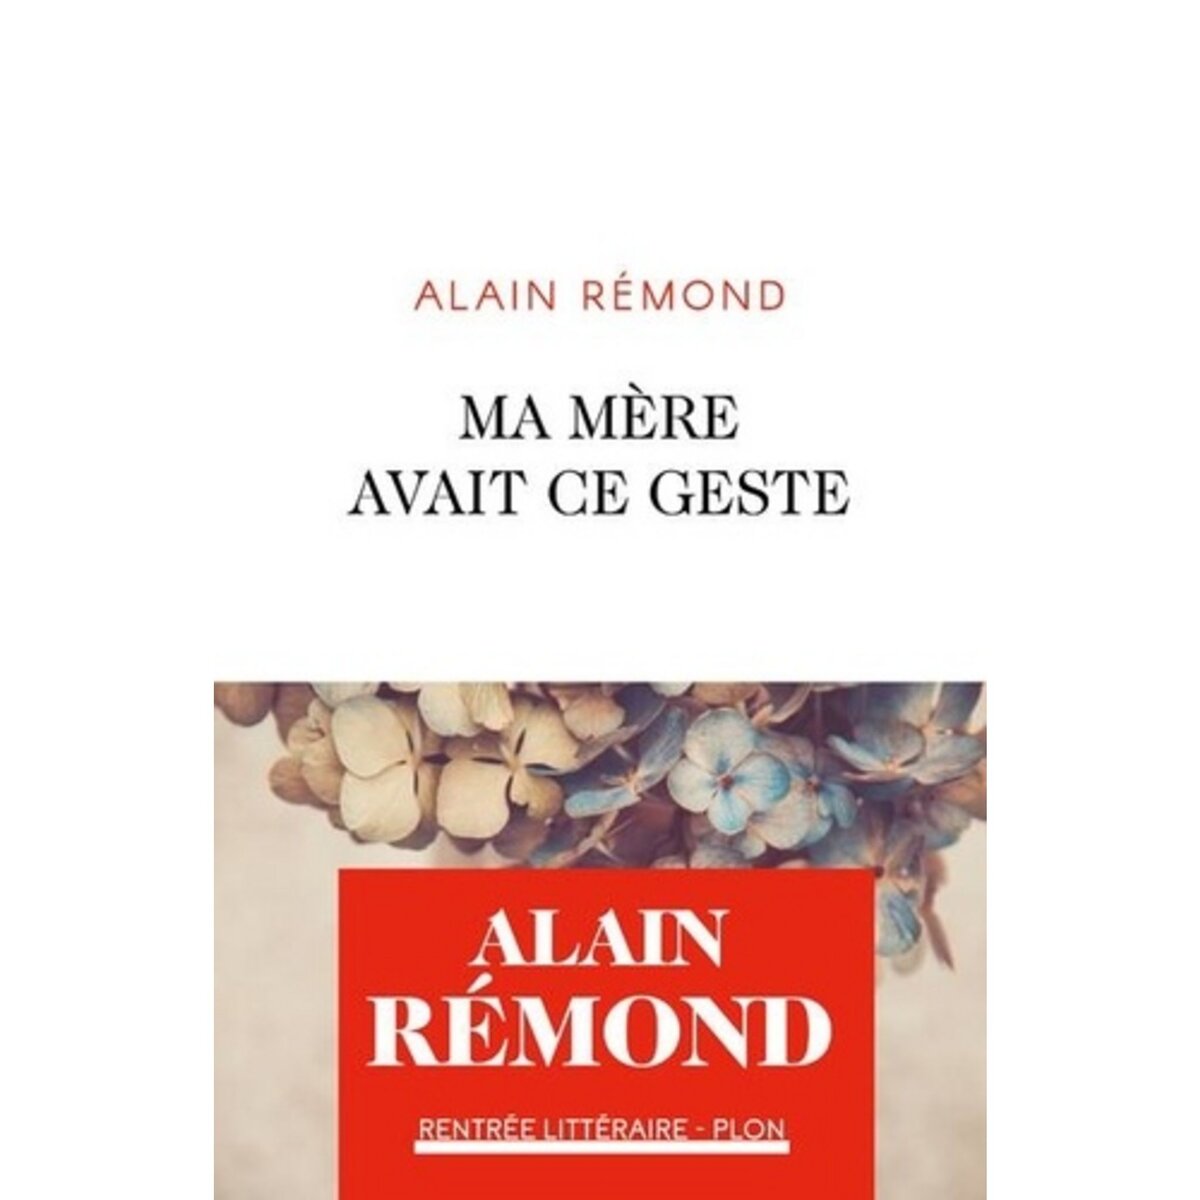  MA MERE AVAIT CE GESTE, Rémond Alain